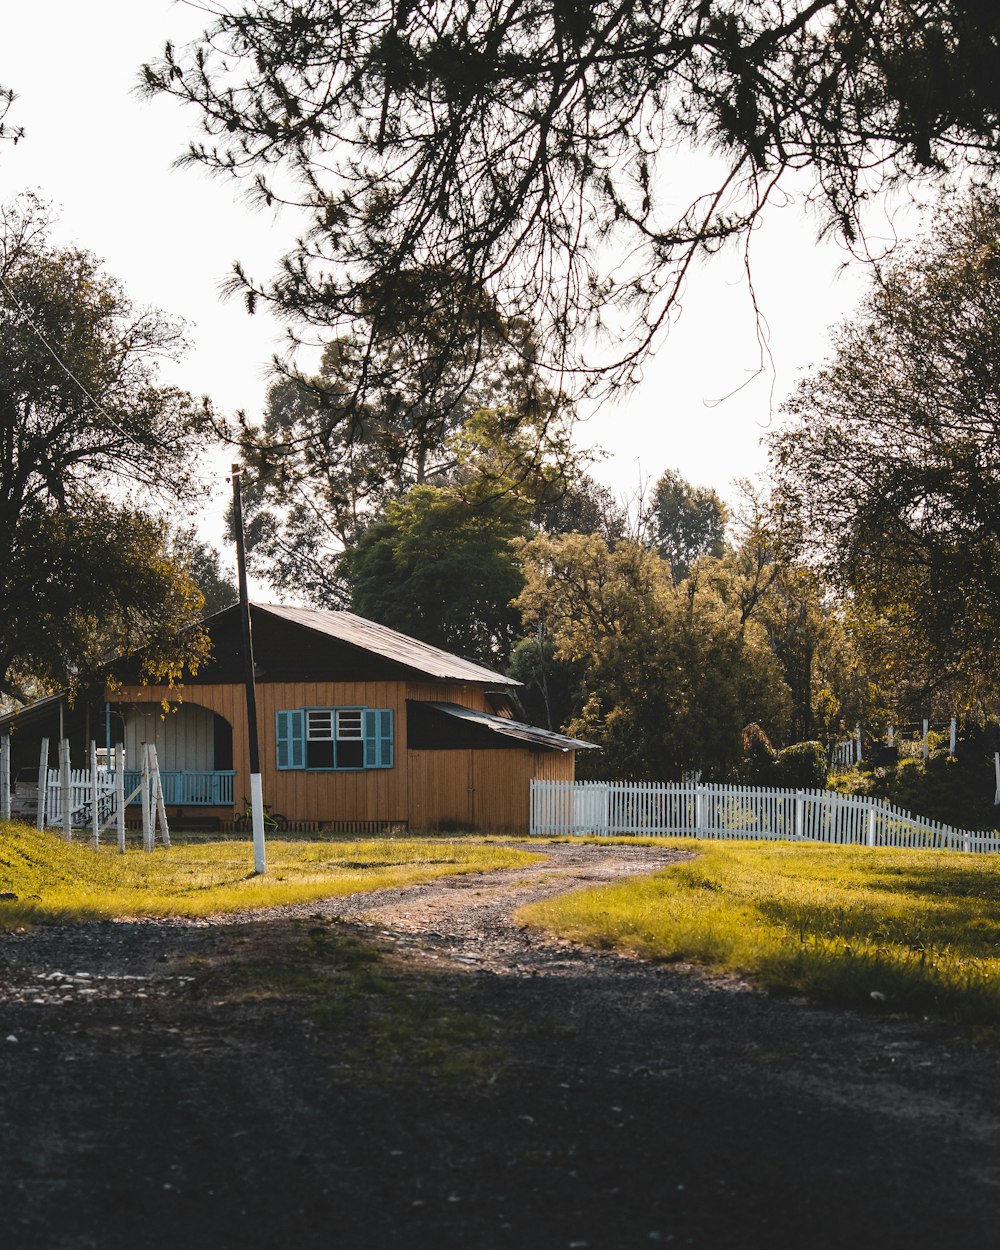 casa de madeira azul e branca perto de árvores verdes durante o dia